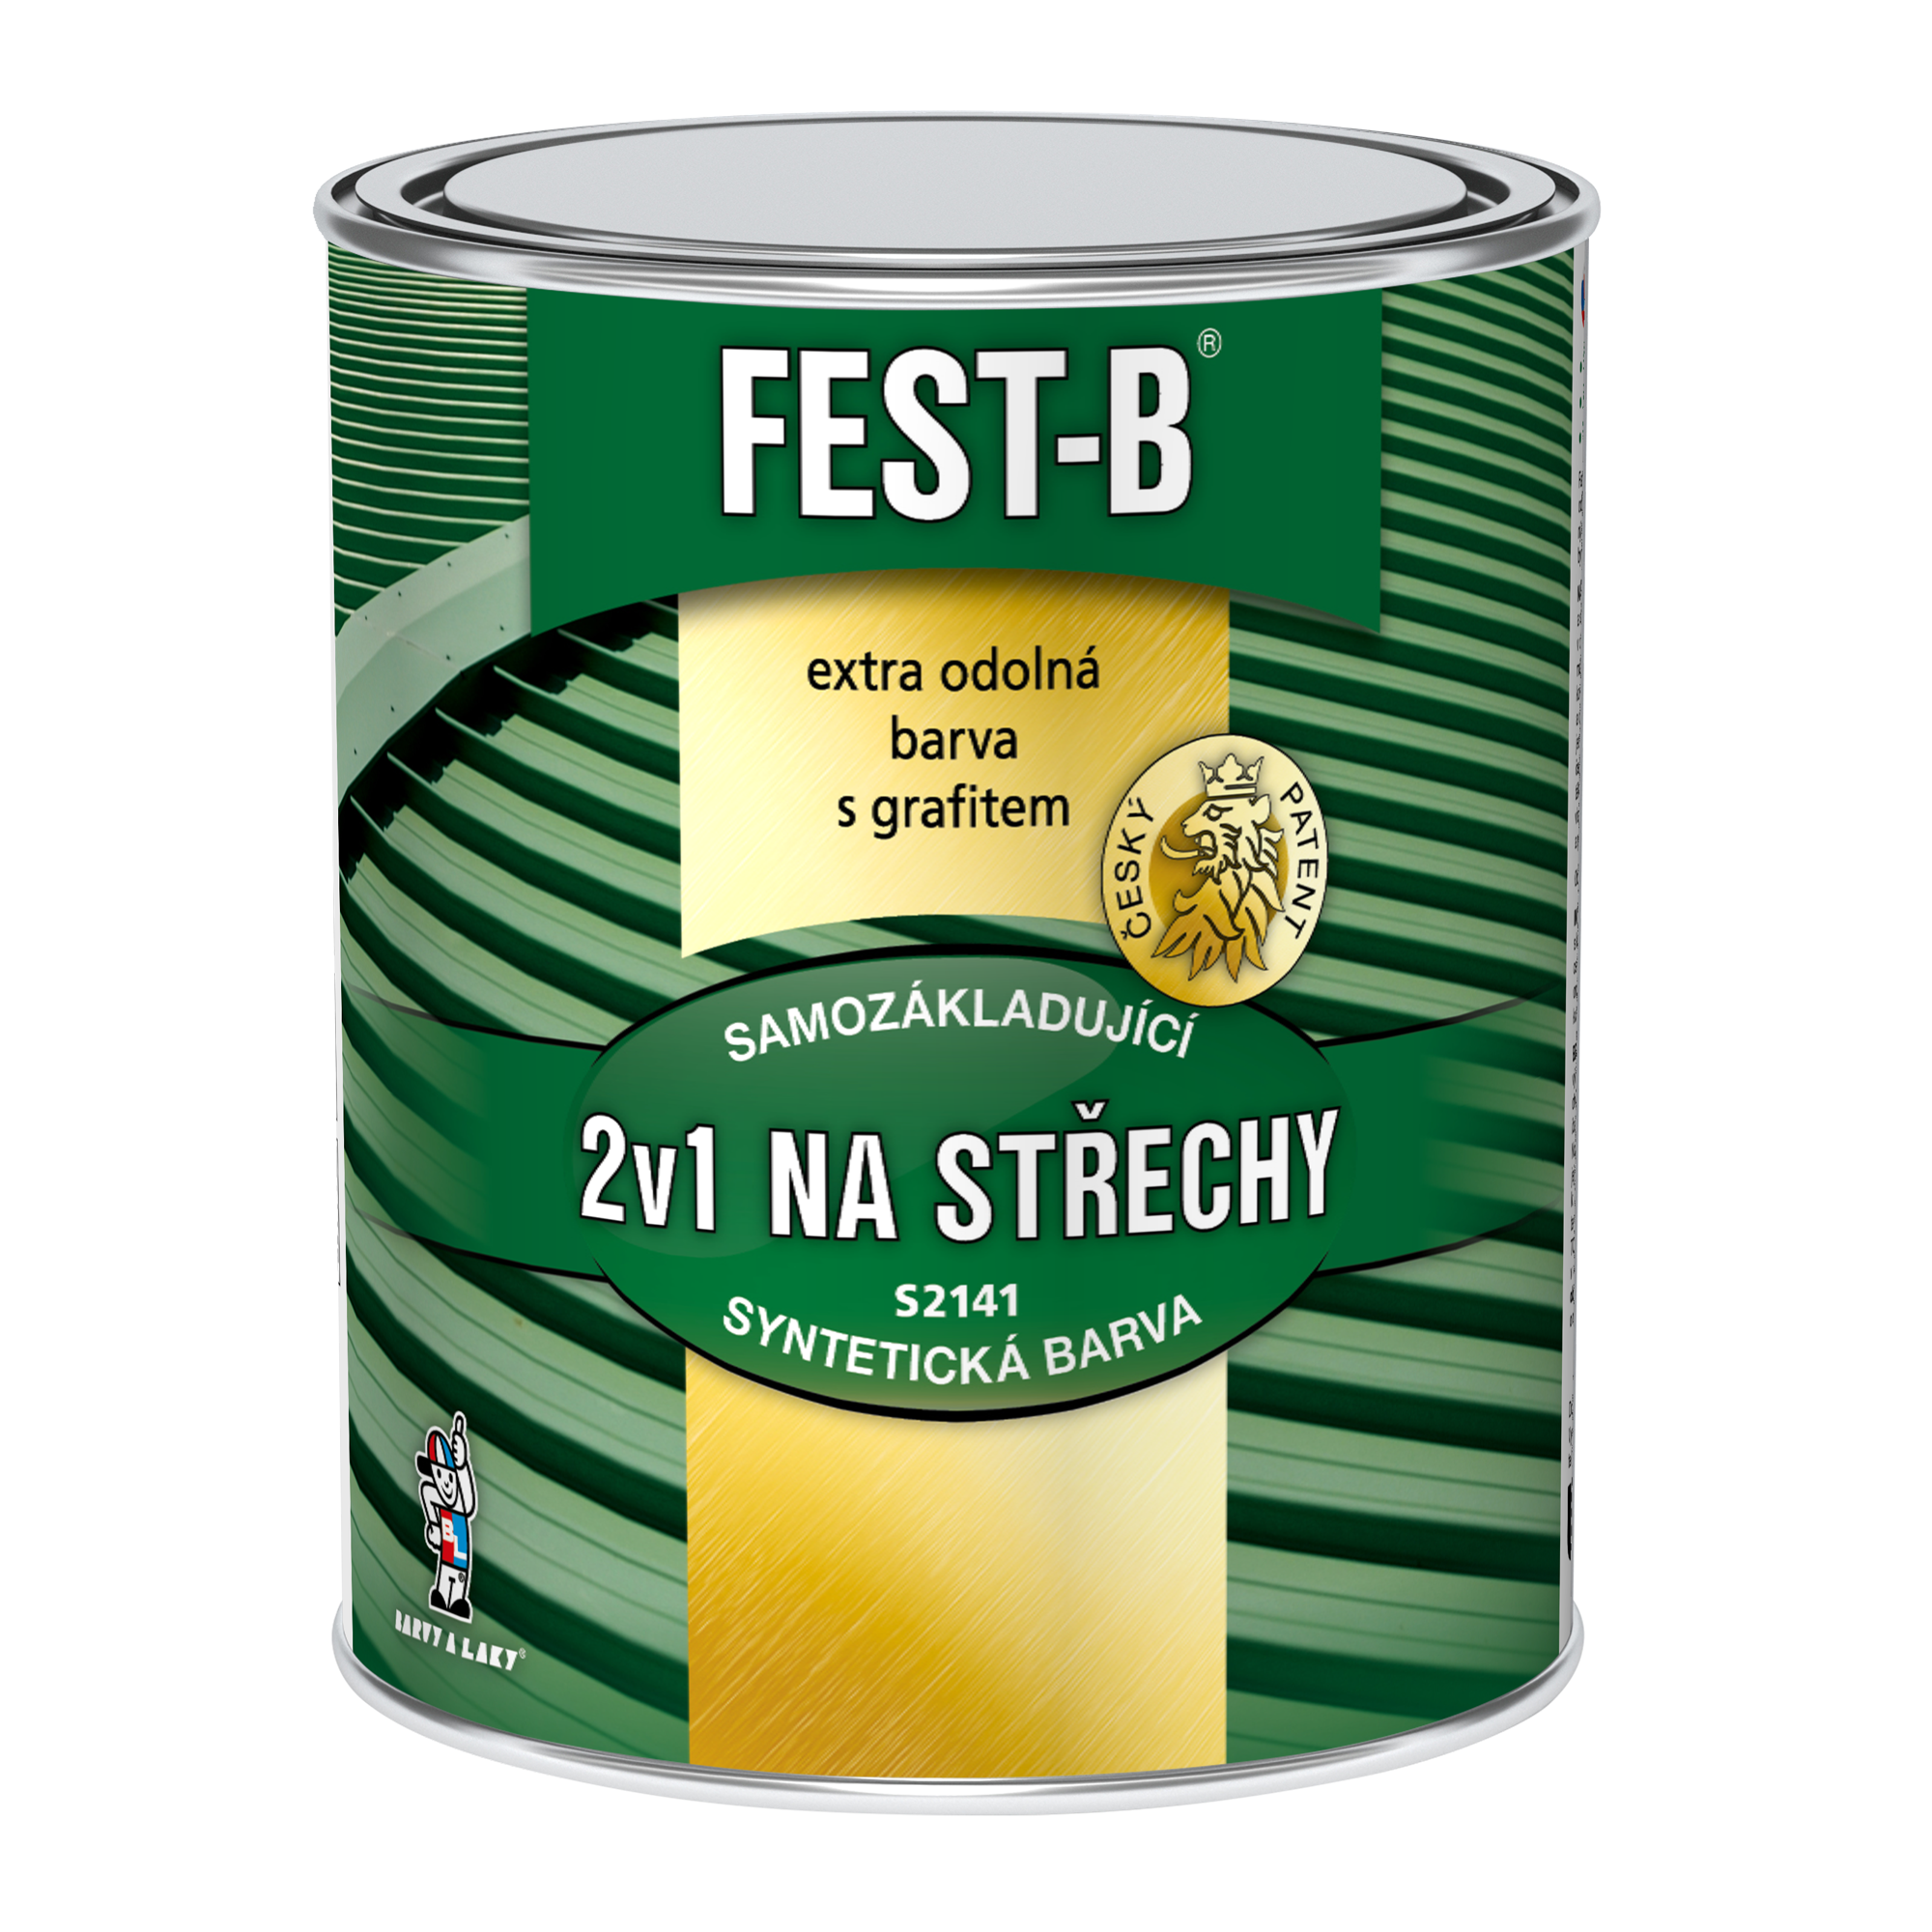 Fest-B 2v1 Na střechy S2141 * Syntetická jednovrstvá antikorozní barva. 1